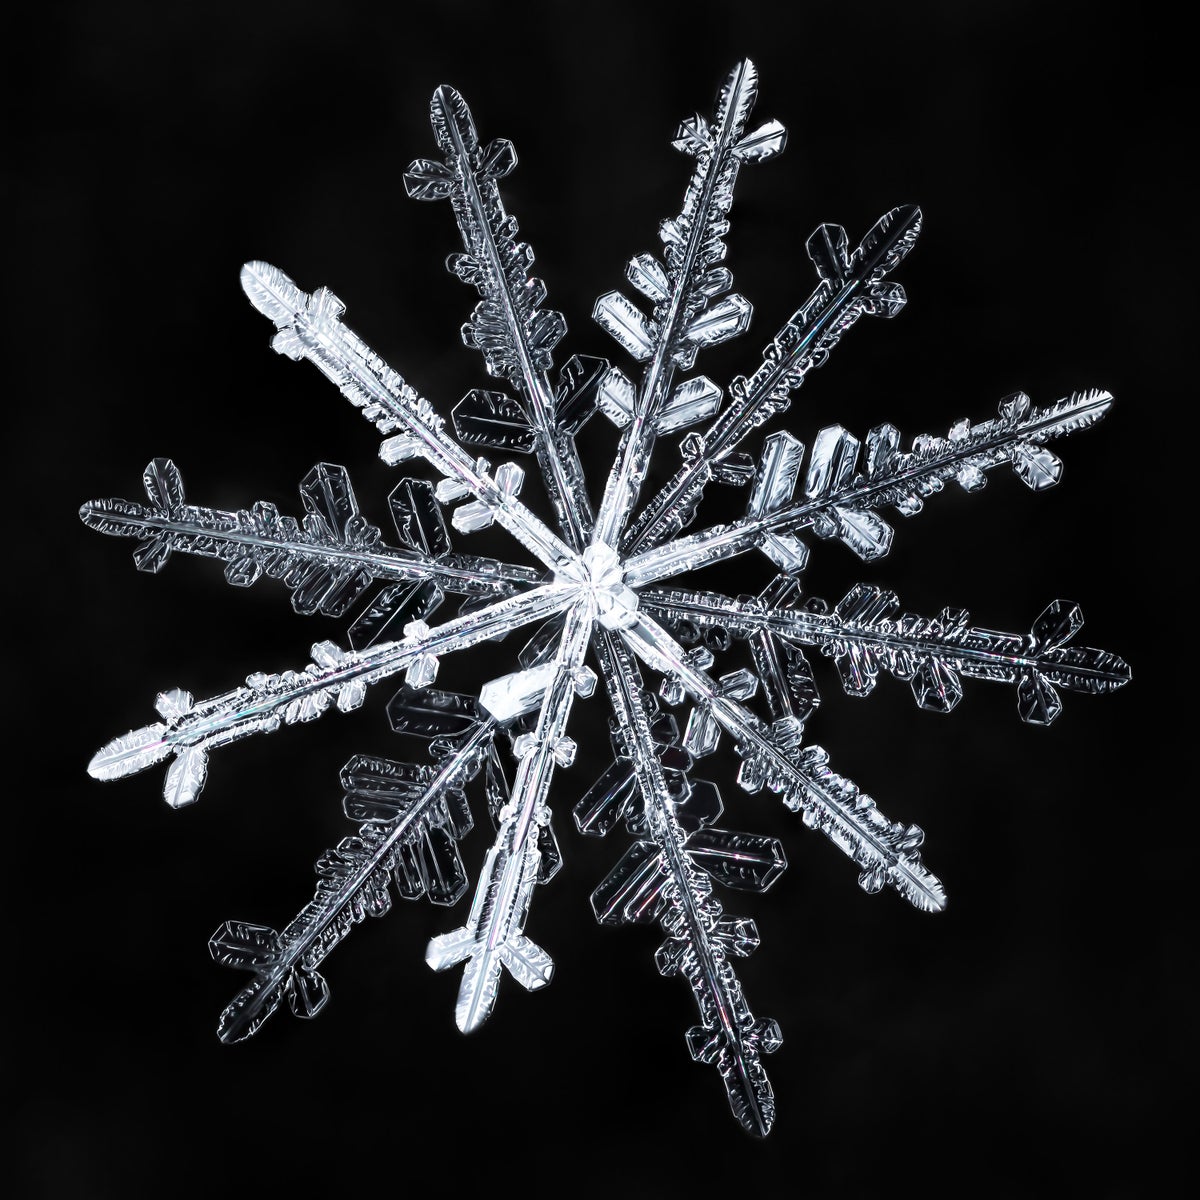 Twelve-branched snowflake.